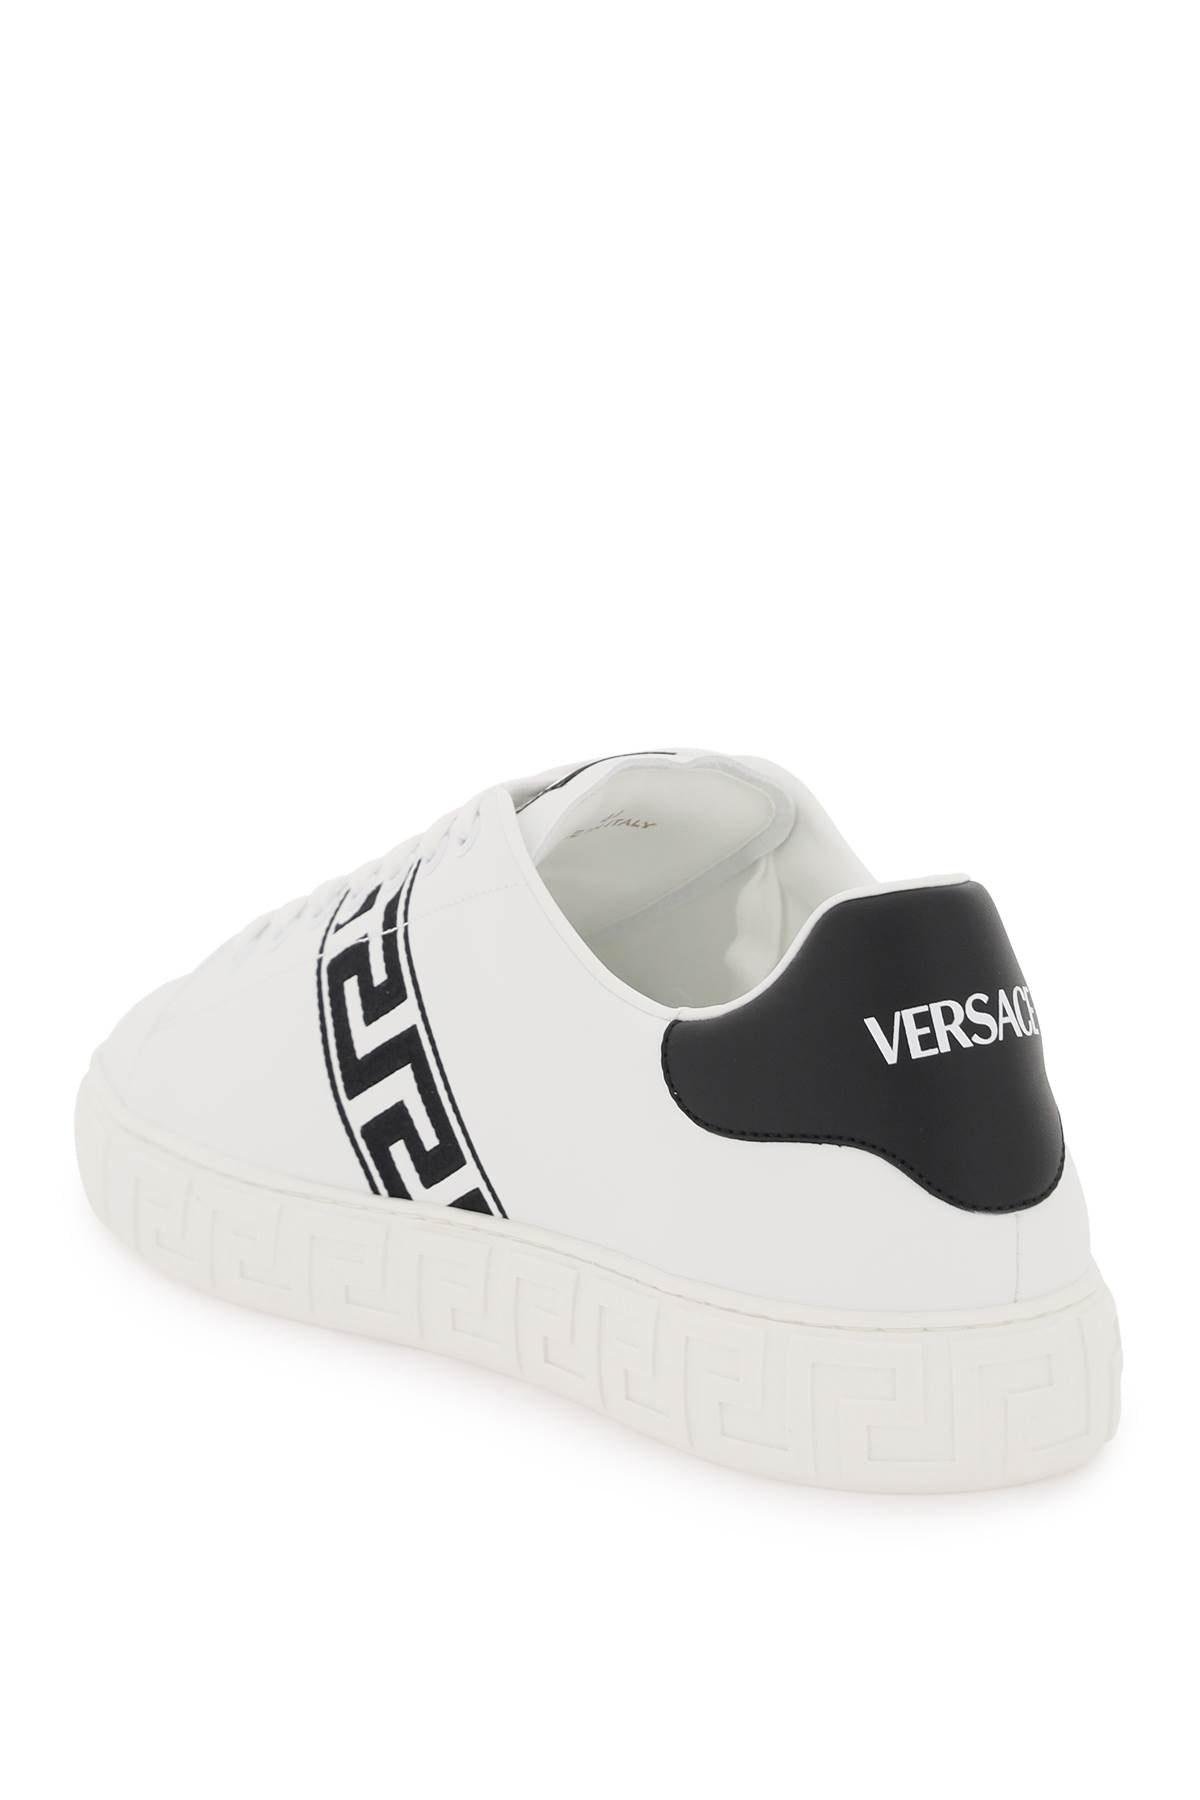 Versace greca sneakers-2